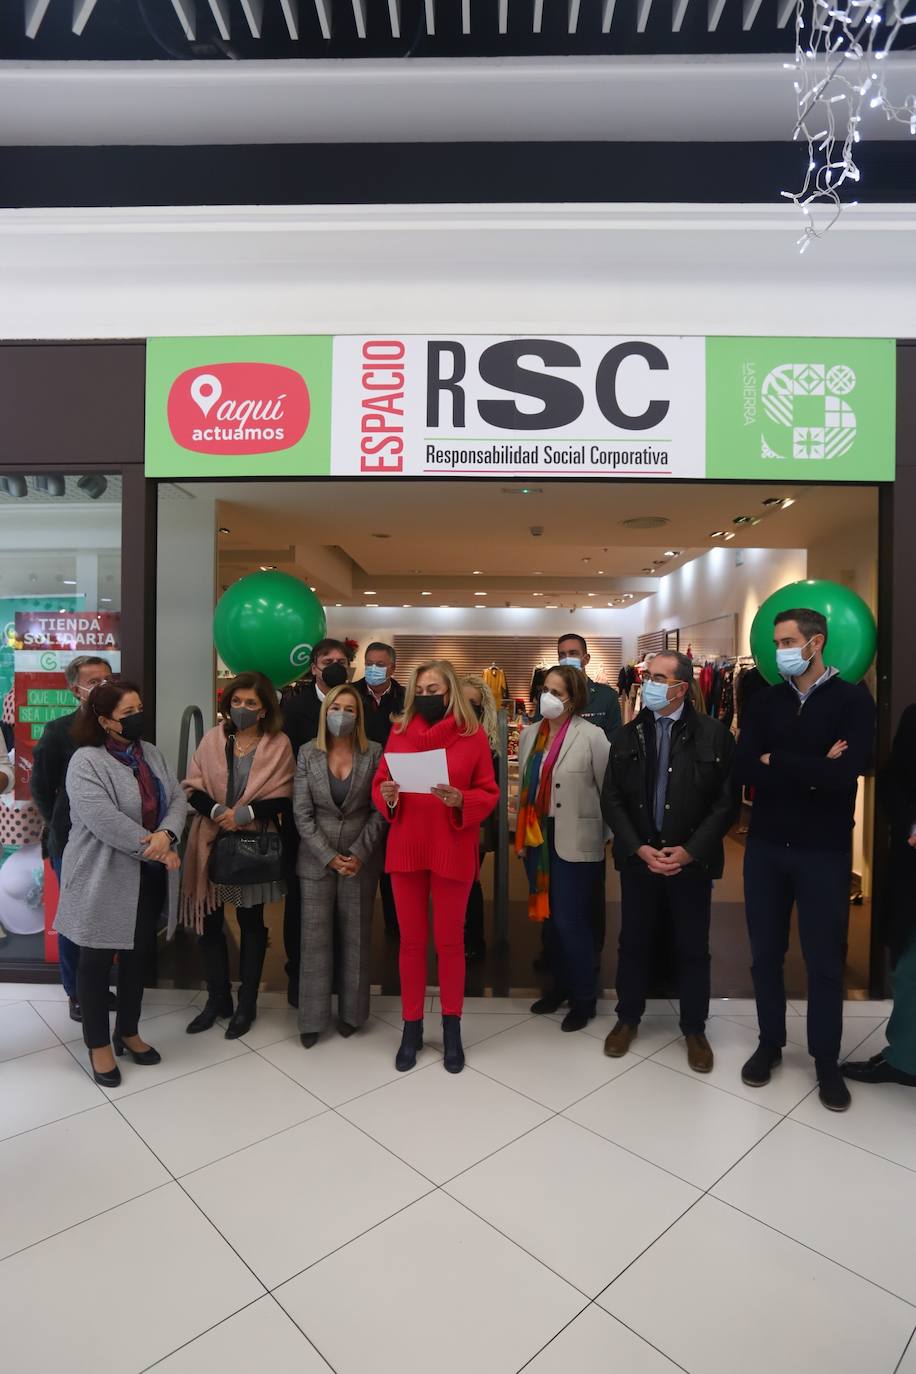 La inauguración de la tienda solidaria de la Asociación contra el Cáncer en Córdoba, en imágenes